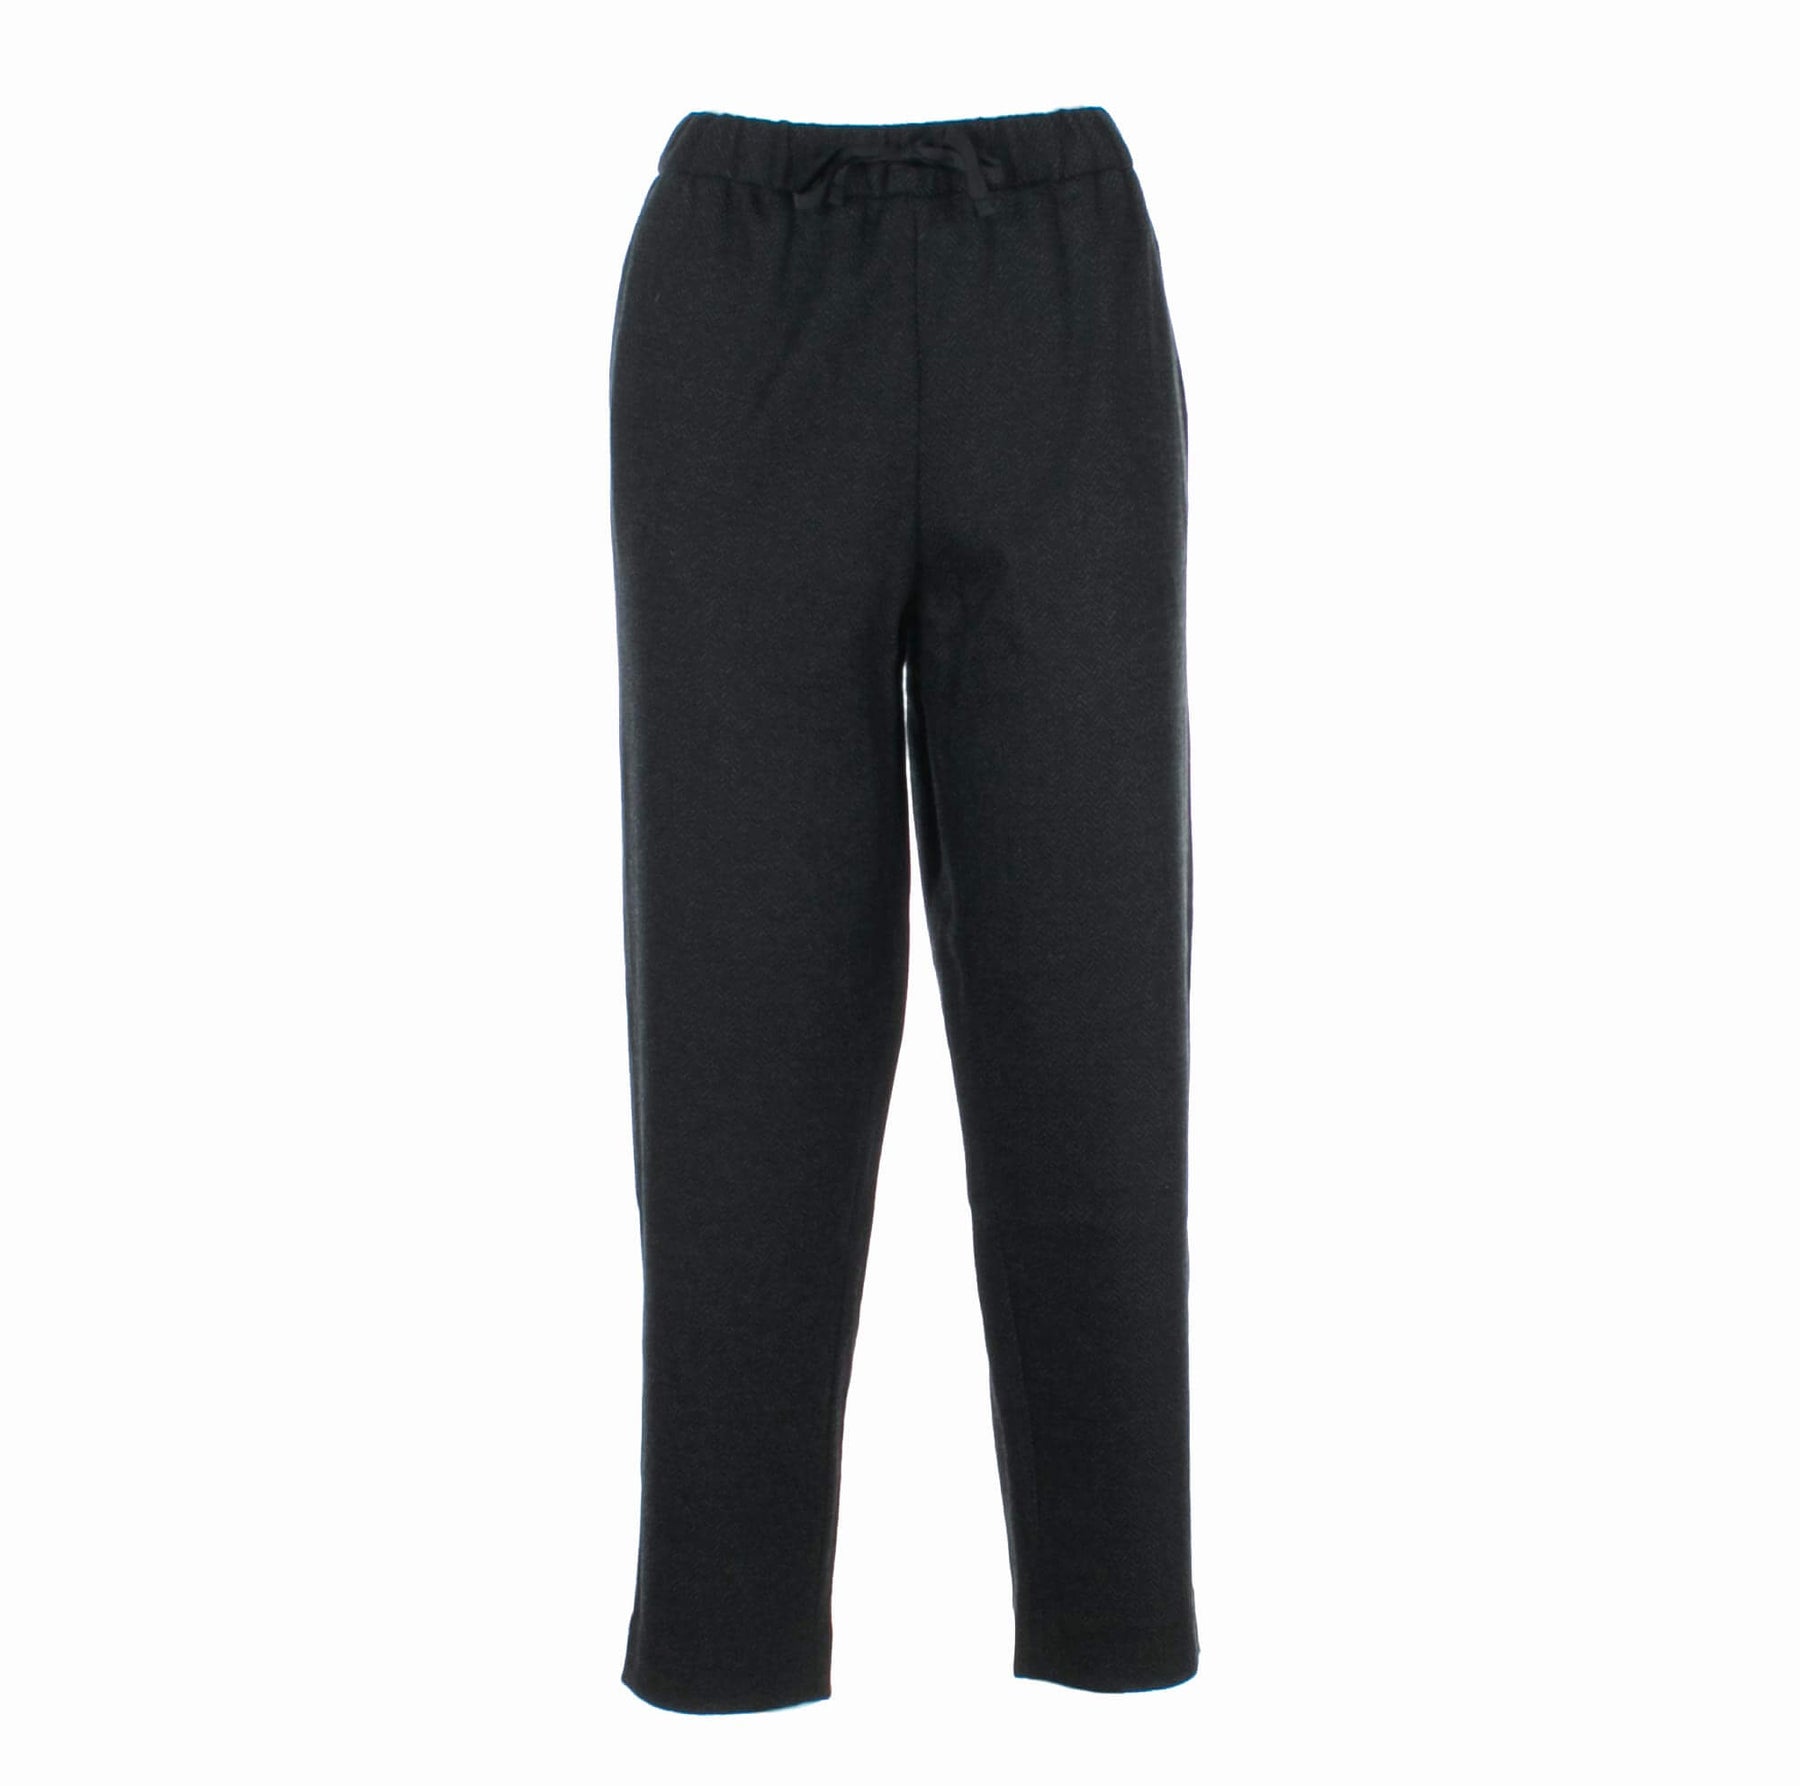 SUN 68 | Pantalone Sportivo grigio scuro,grigio medio Donna | P28204